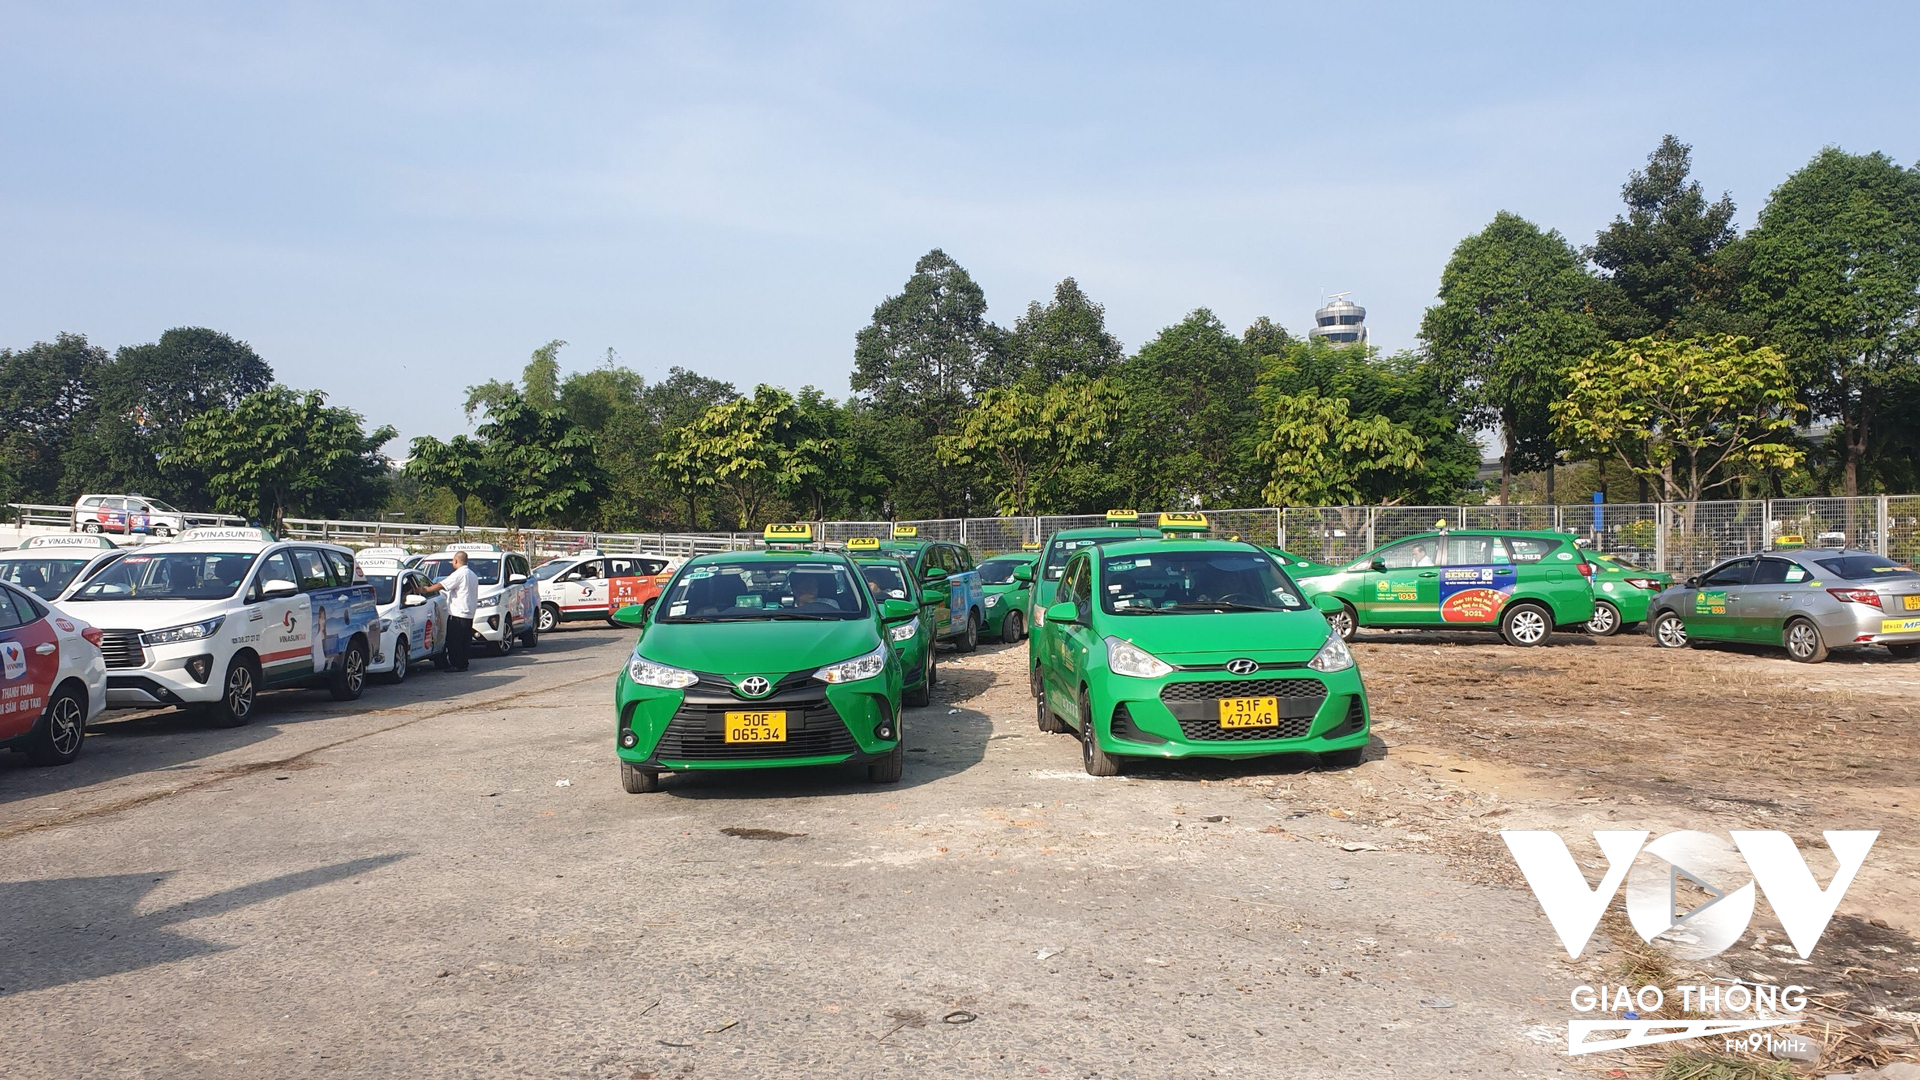 Với 100 chỗ đậu xe taxi, sẽ giúp cho hành khách được tiếp cận nhanh hơn khi đón xe taxi tại sân bay Tân Sơn Nhất.